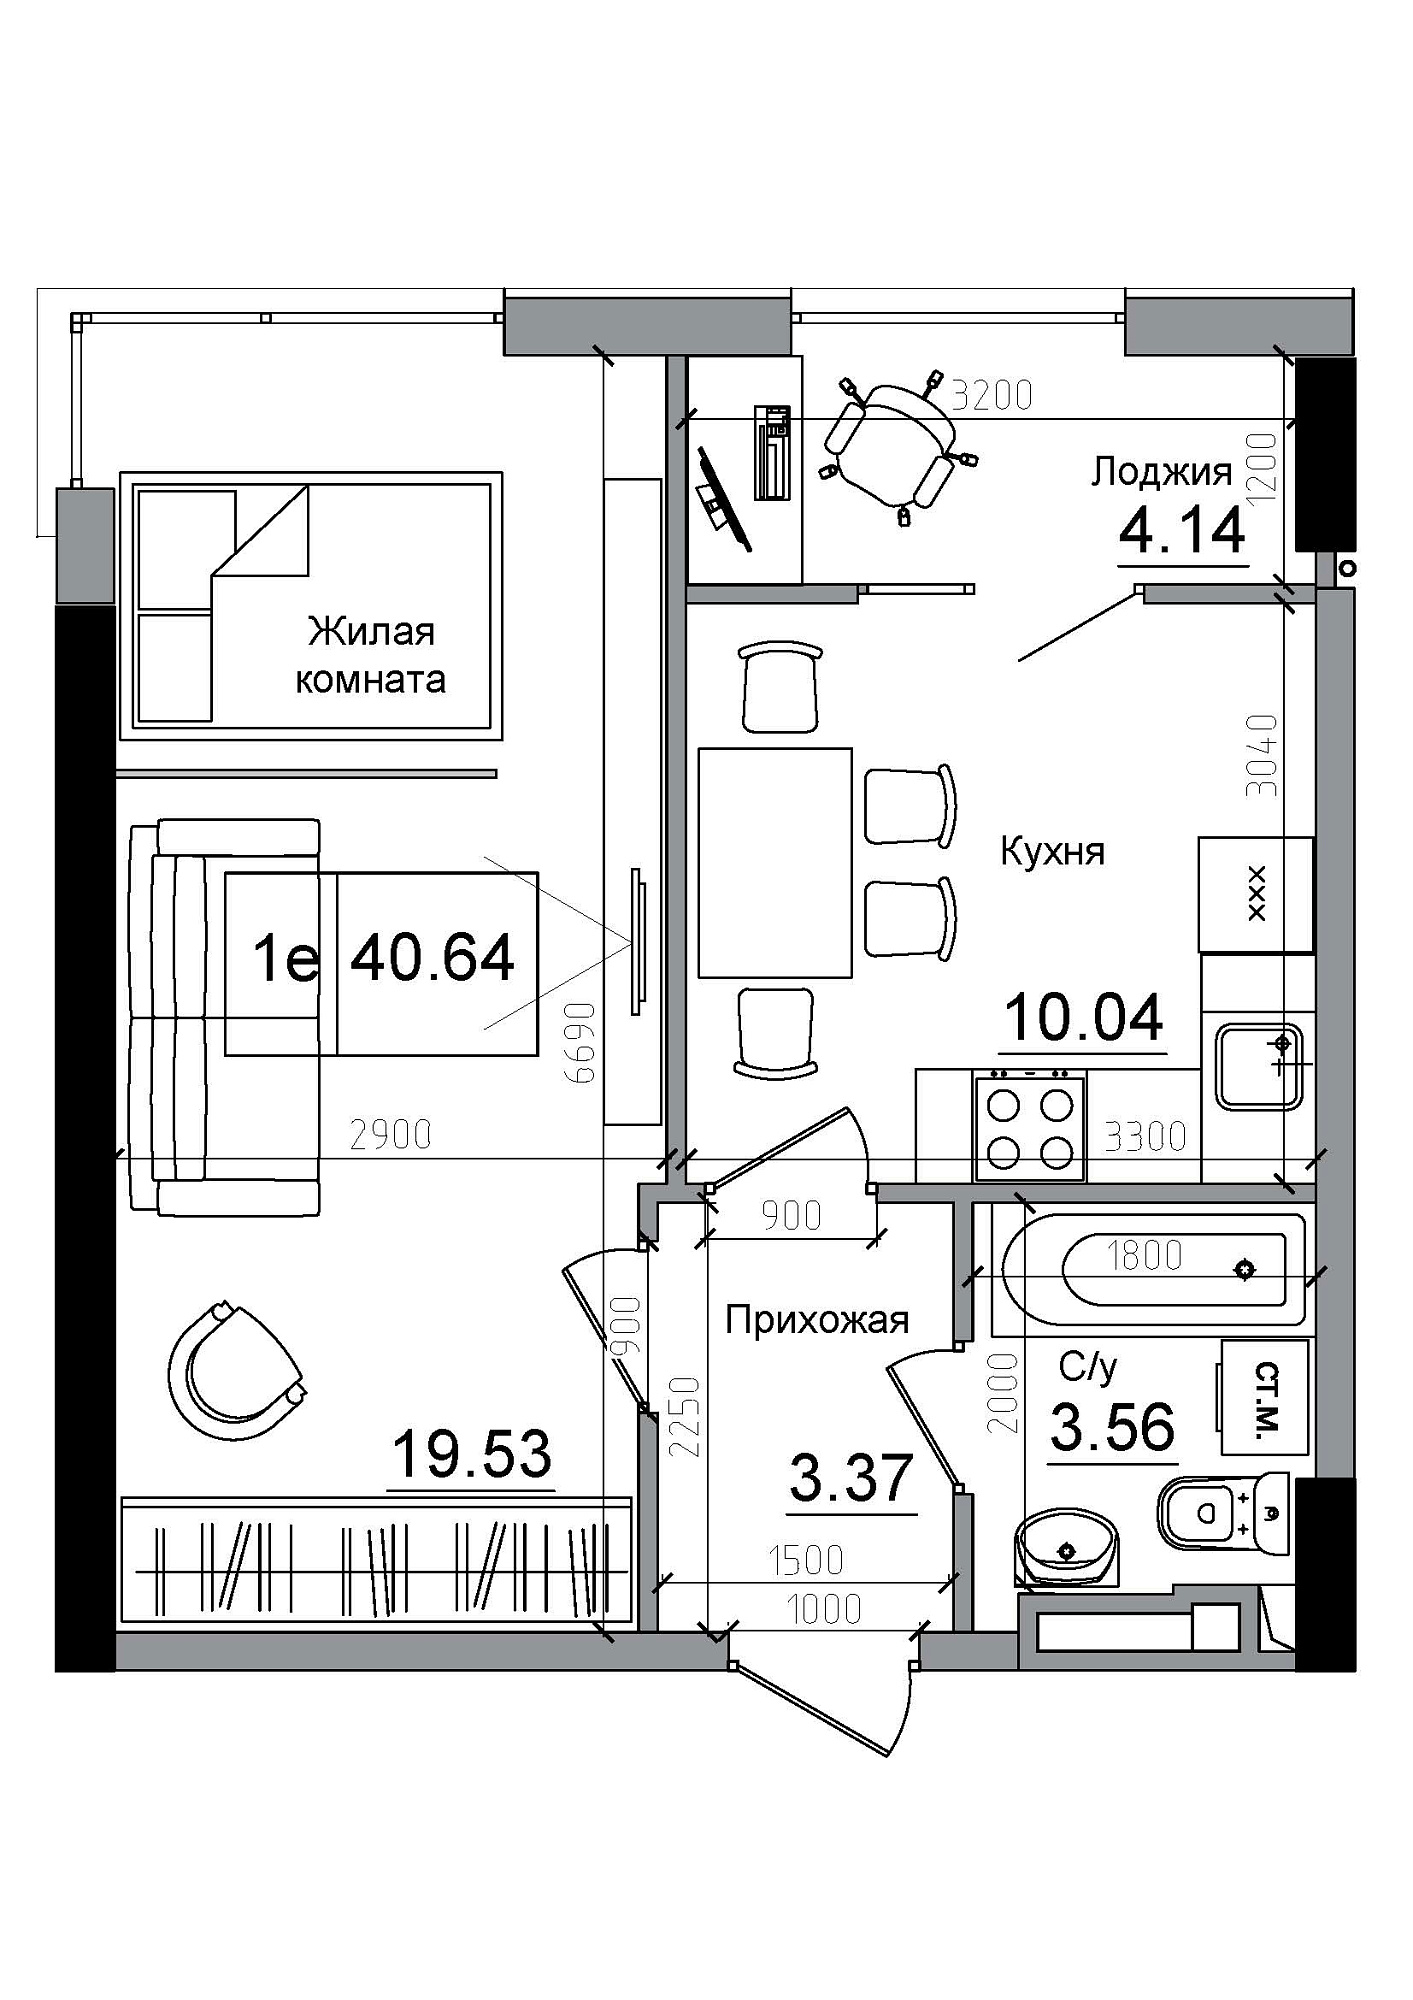 Планування 1-к квартира площею 40.64м2, AB-12-08/00006.